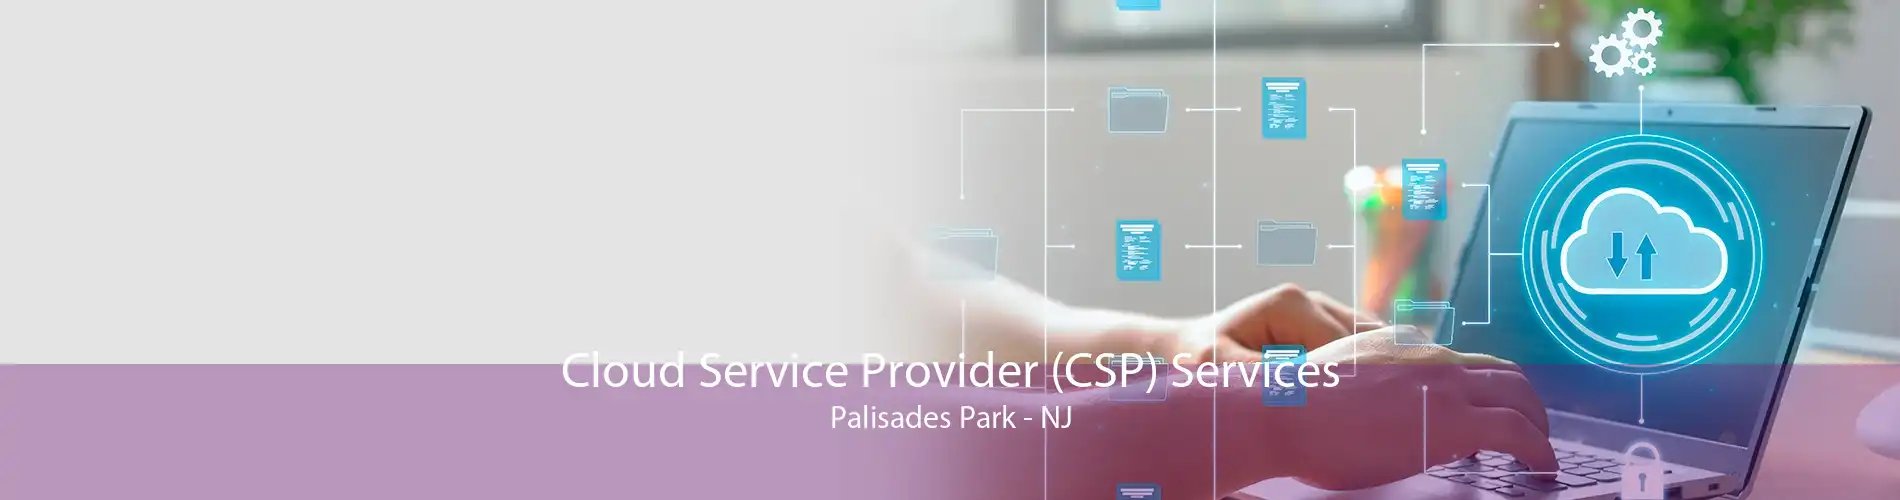 Cloud Service Provider (CSP) Services Palisades Park - NJ